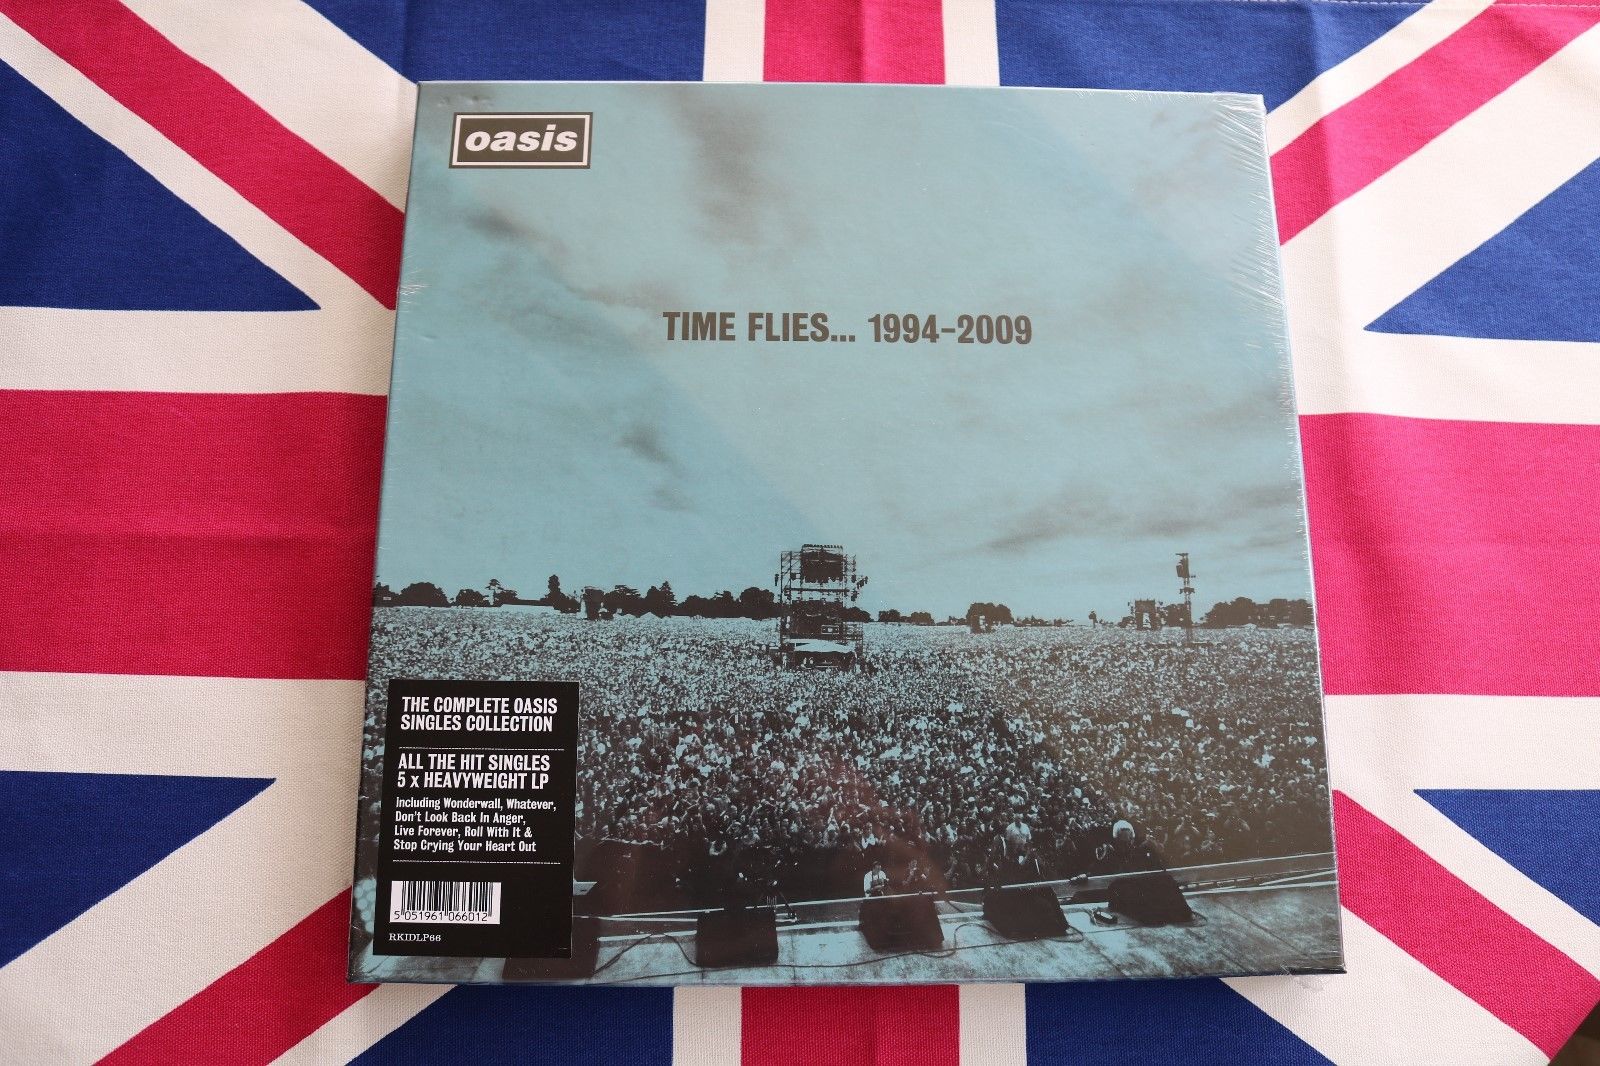 popsike.com - Oasis Time Flies Vinyl Box Set - RARE MINT SEALED CONDITION -  auction details